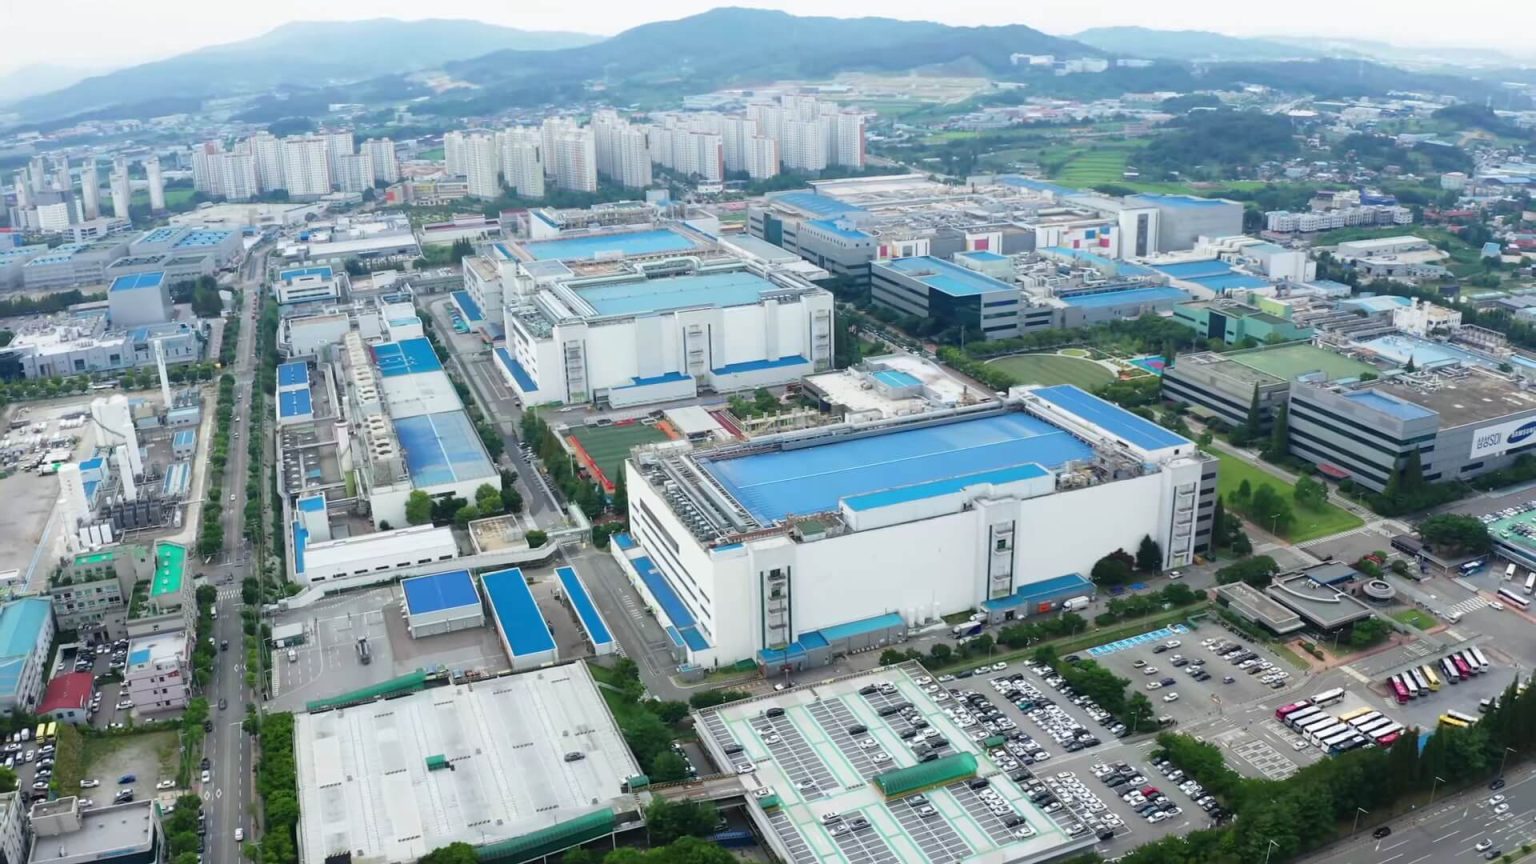 Samsung inaugurará su nueva planta de semiconductores de alto rendimiento en 2022, en Taylor para acelerar producción.